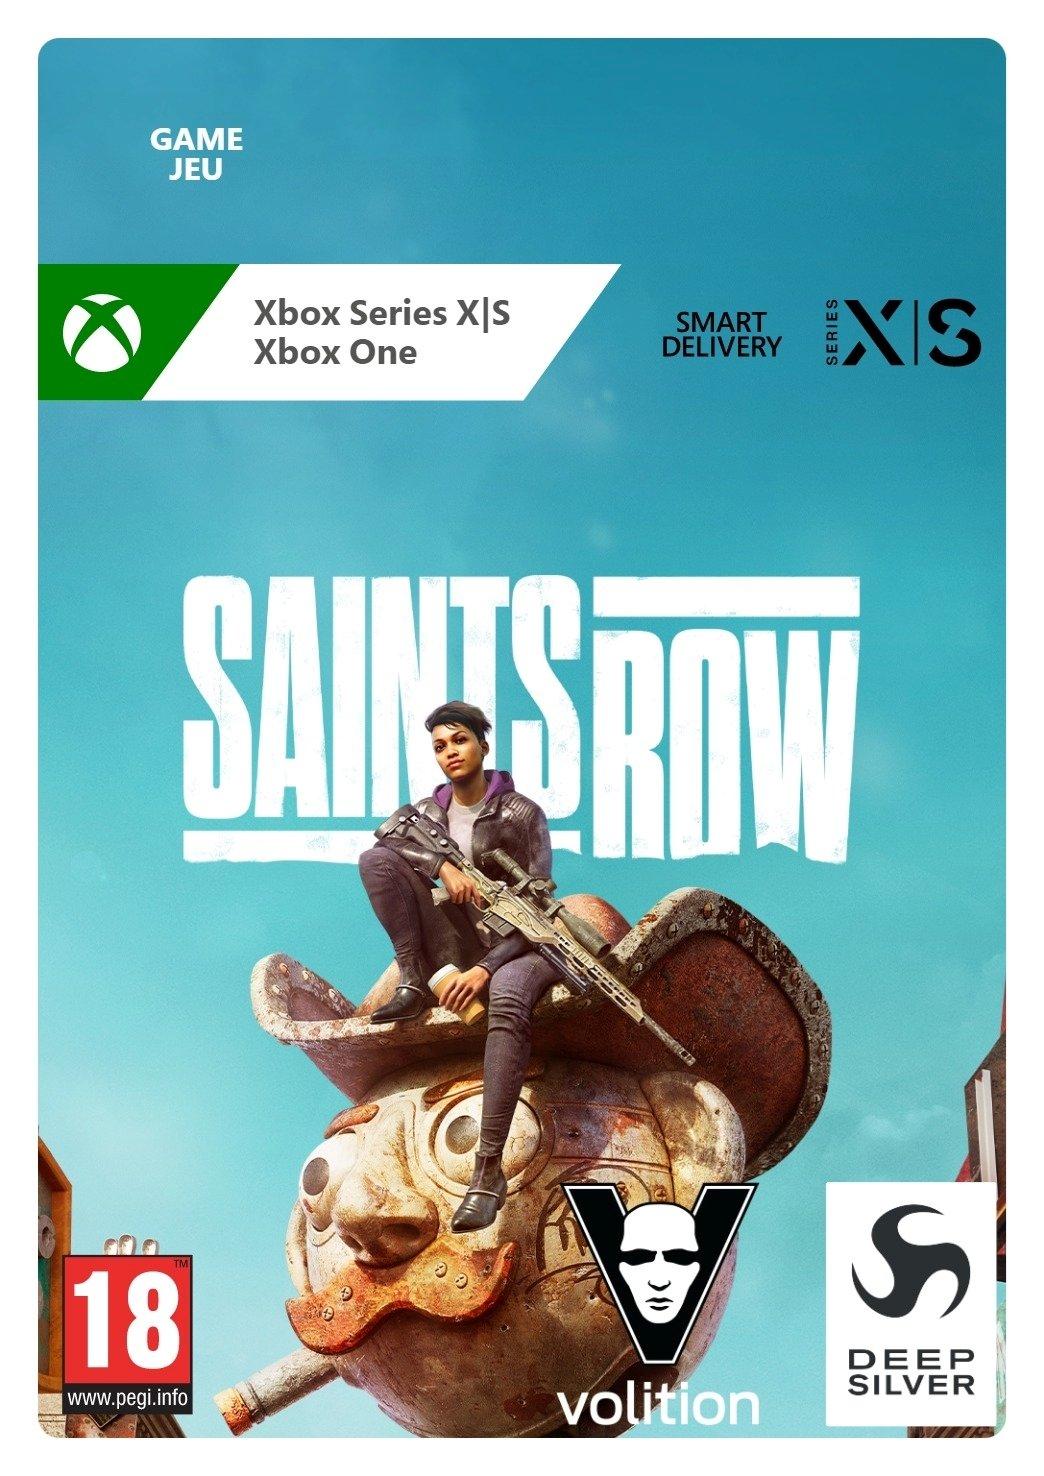 Saints Row - Xbox Series X/Xbox One - Game | G3Q-01259 (83c8f60f-a5dc-6e4f-9a4b-803d5029bbe6)